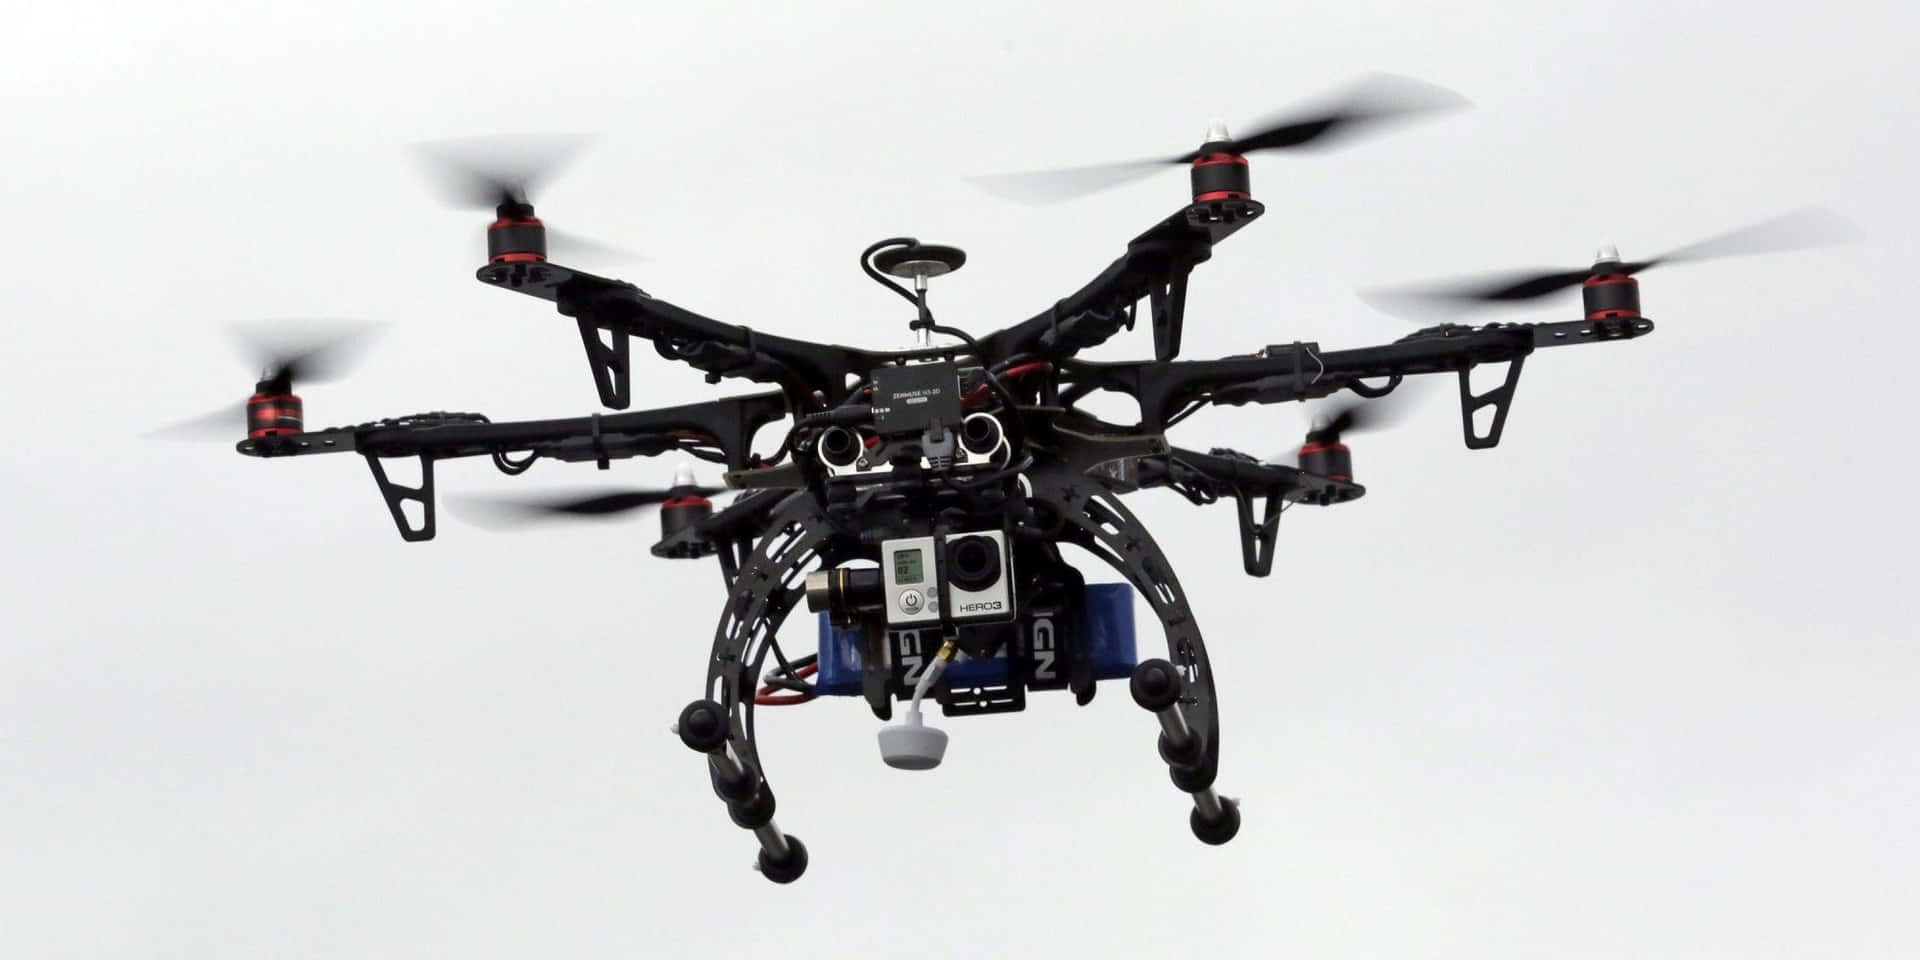 Professional Camera Dronein Flight.jpg Wallpaper